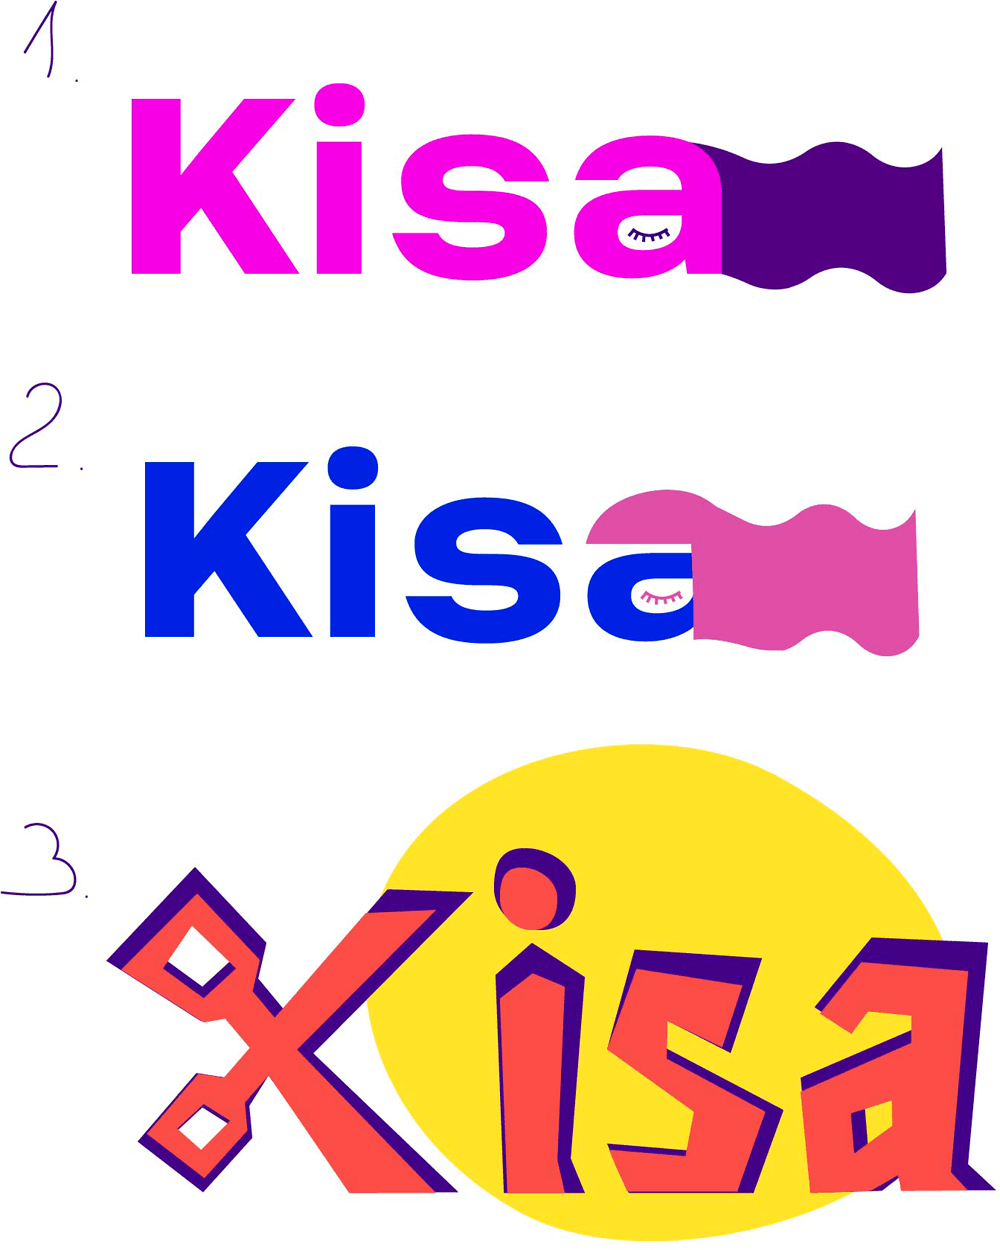 kisa process 04